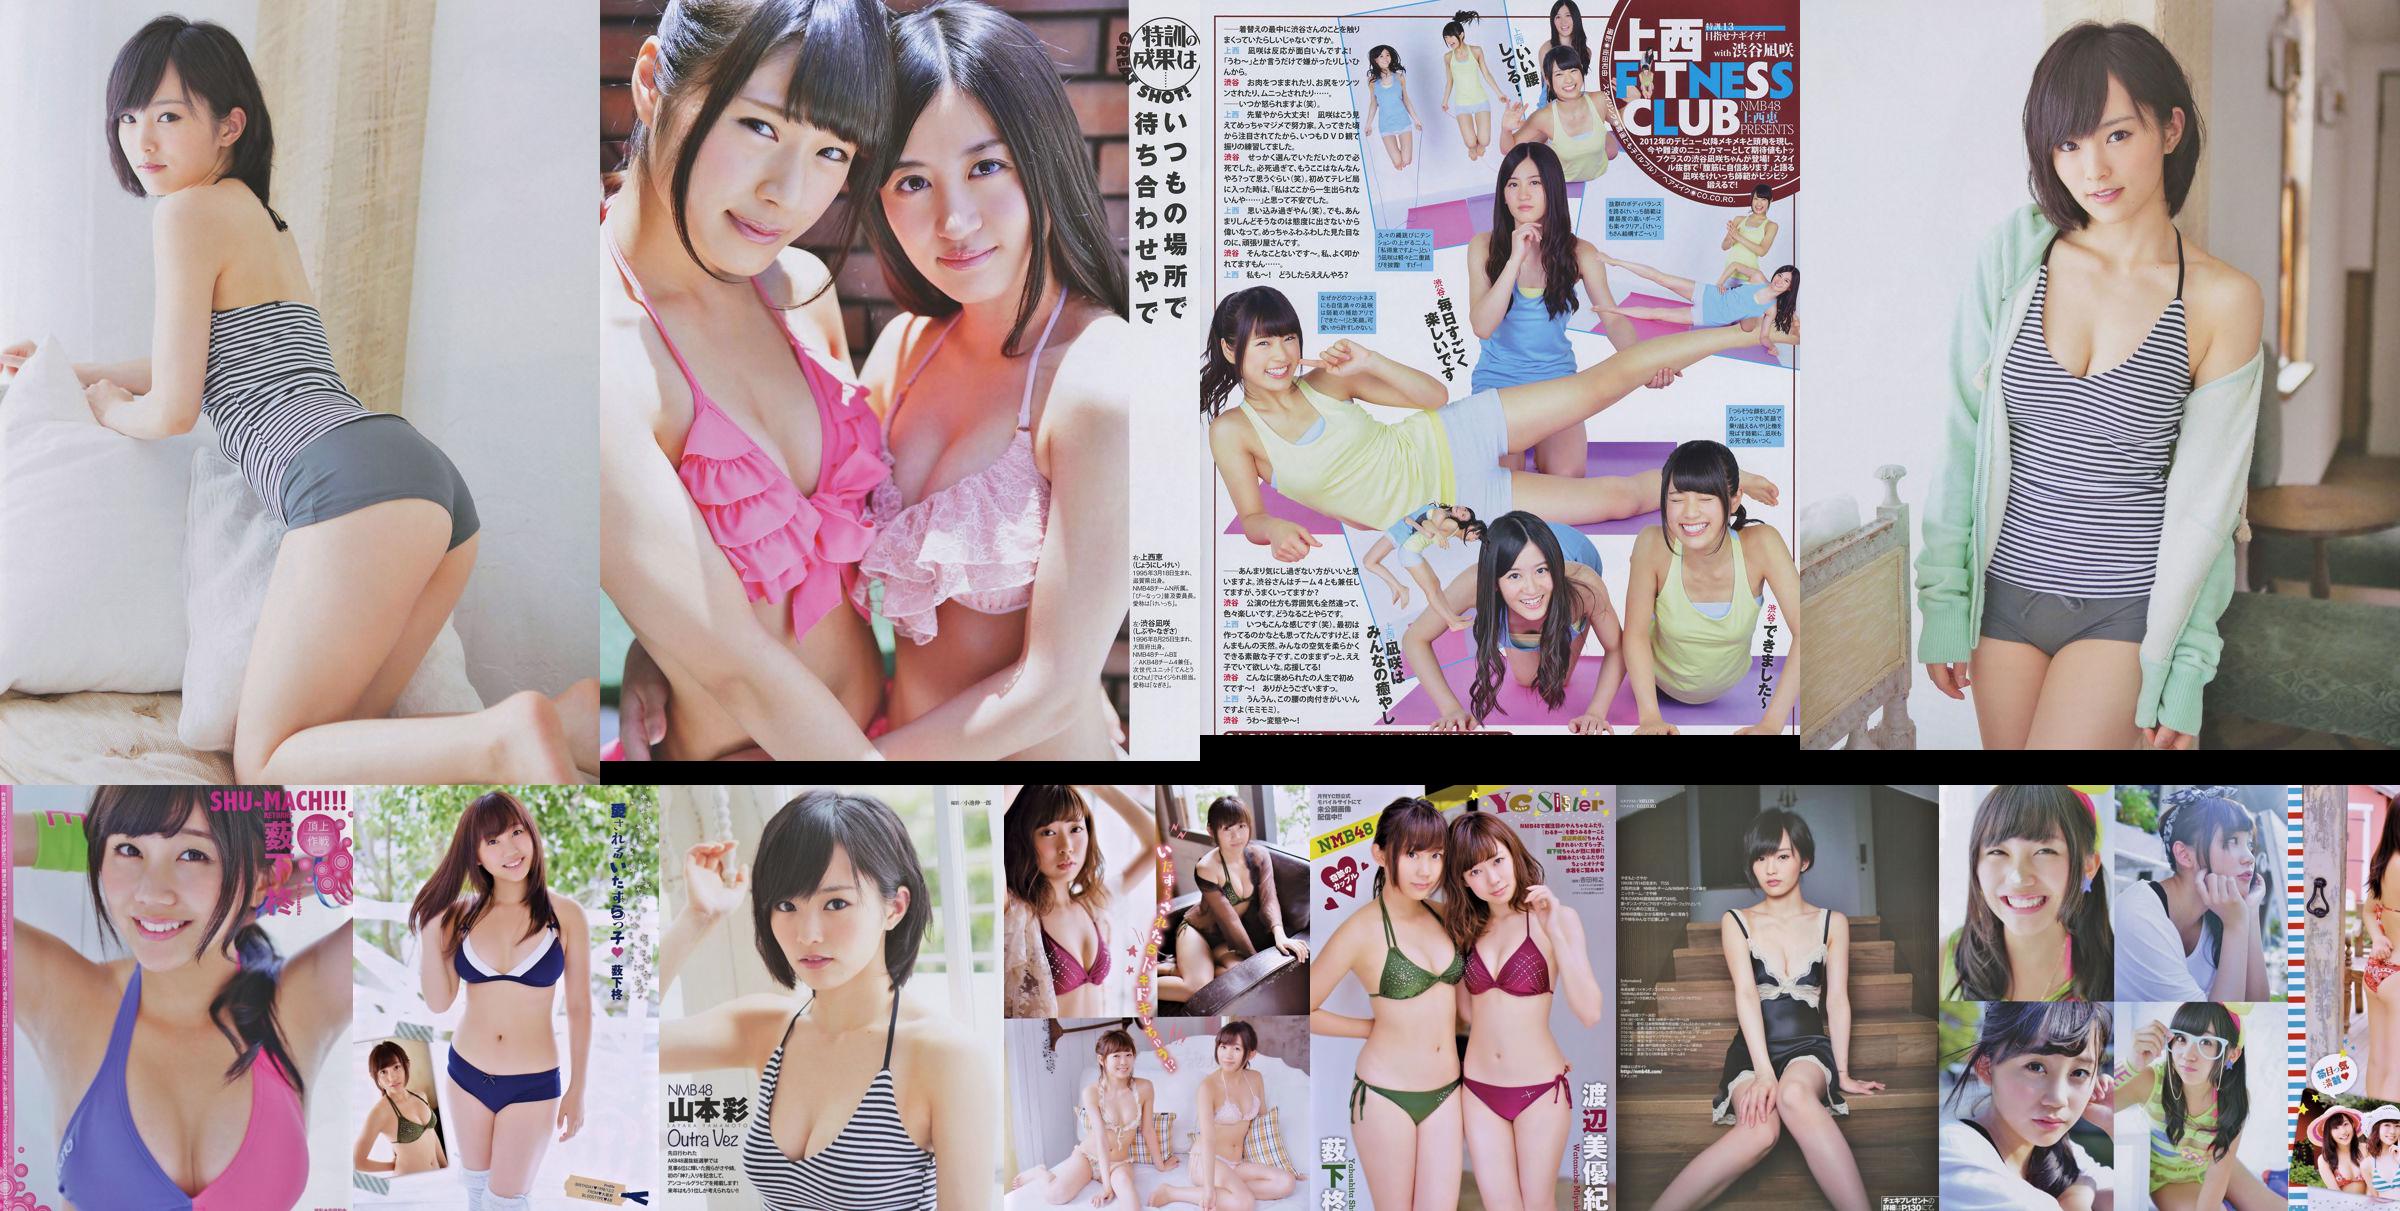 [Jovem campeão Retsu] Shu Yabushita Miyuki Watanabe 2014 No.10 Fotografia No.3ca8b1 Página 1